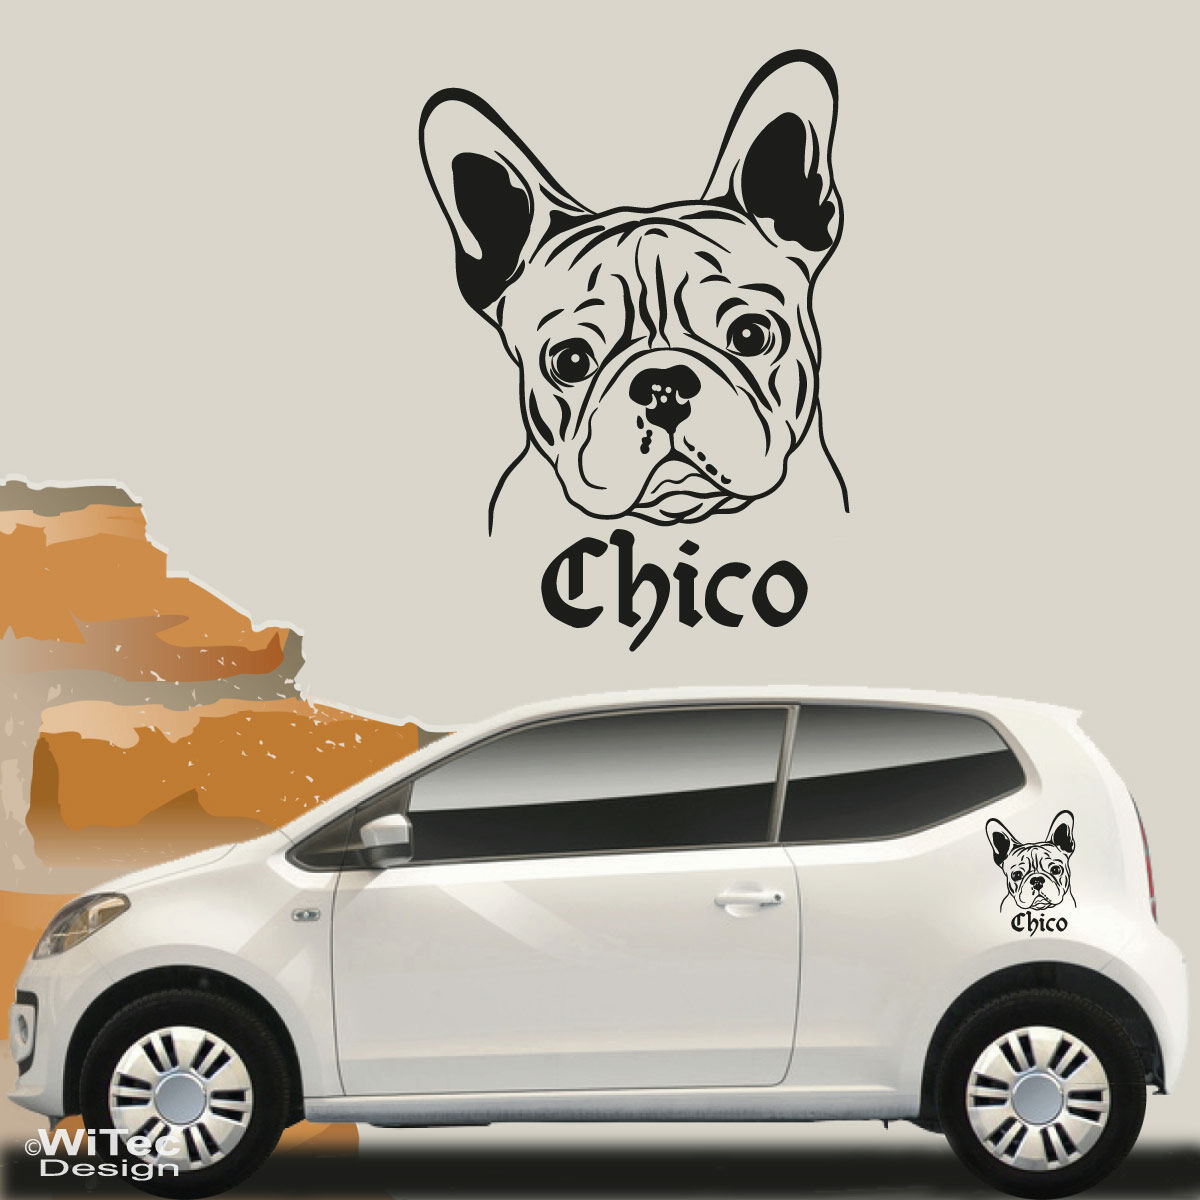 Französische Bulldogge Aufkleber Autofenster Dekoration 3 verschiedene  Modelle -  Zürich